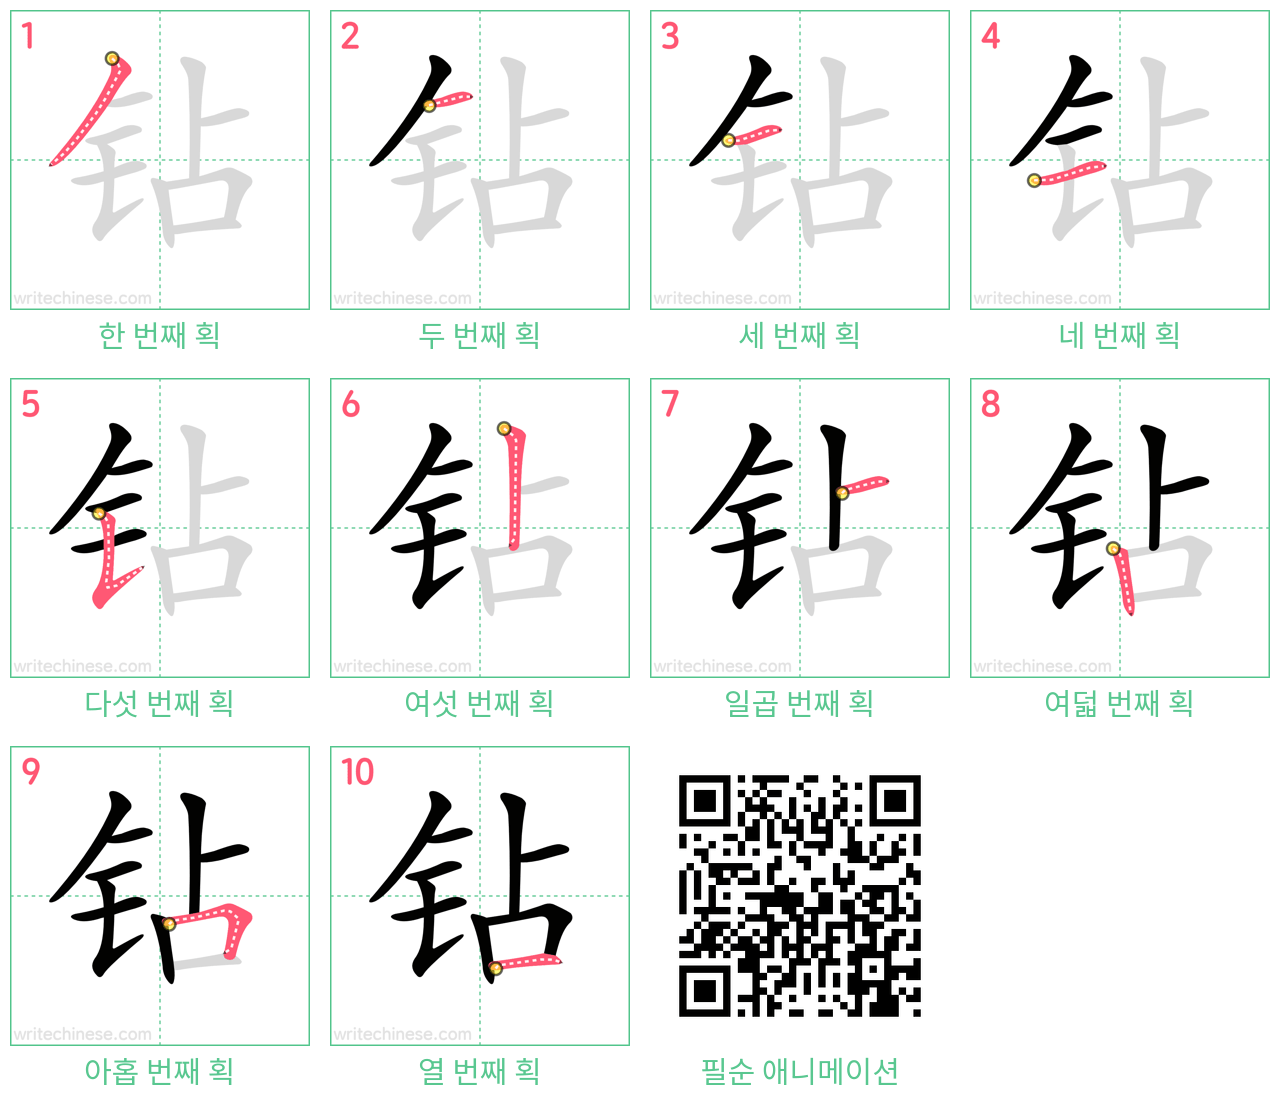 钻 step-by-step stroke order diagrams